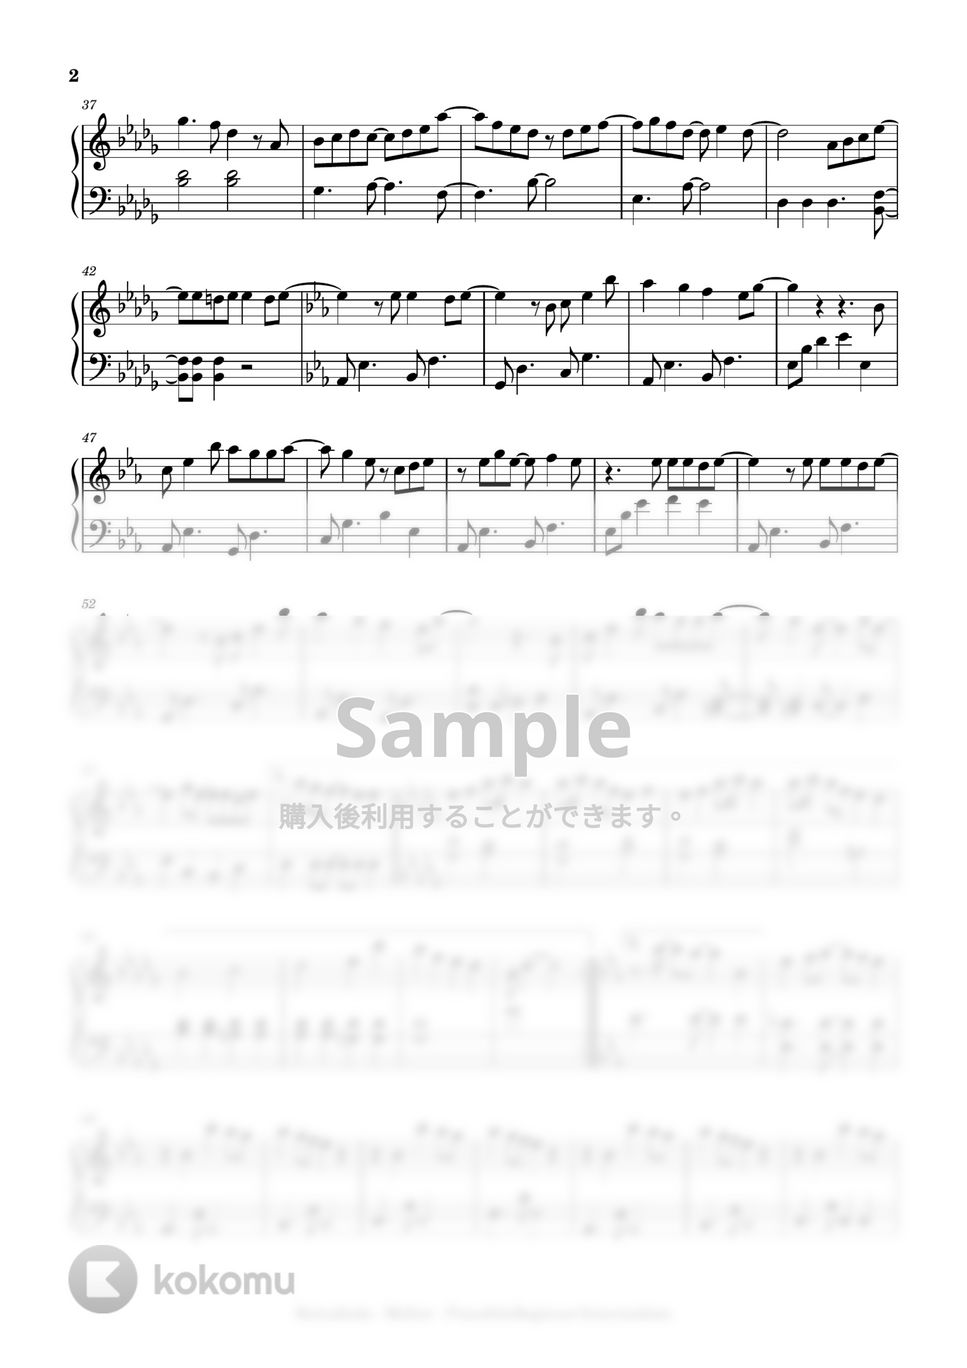 須田景凪 - Mellow (beginner to intermediate, piano) by Mopianic